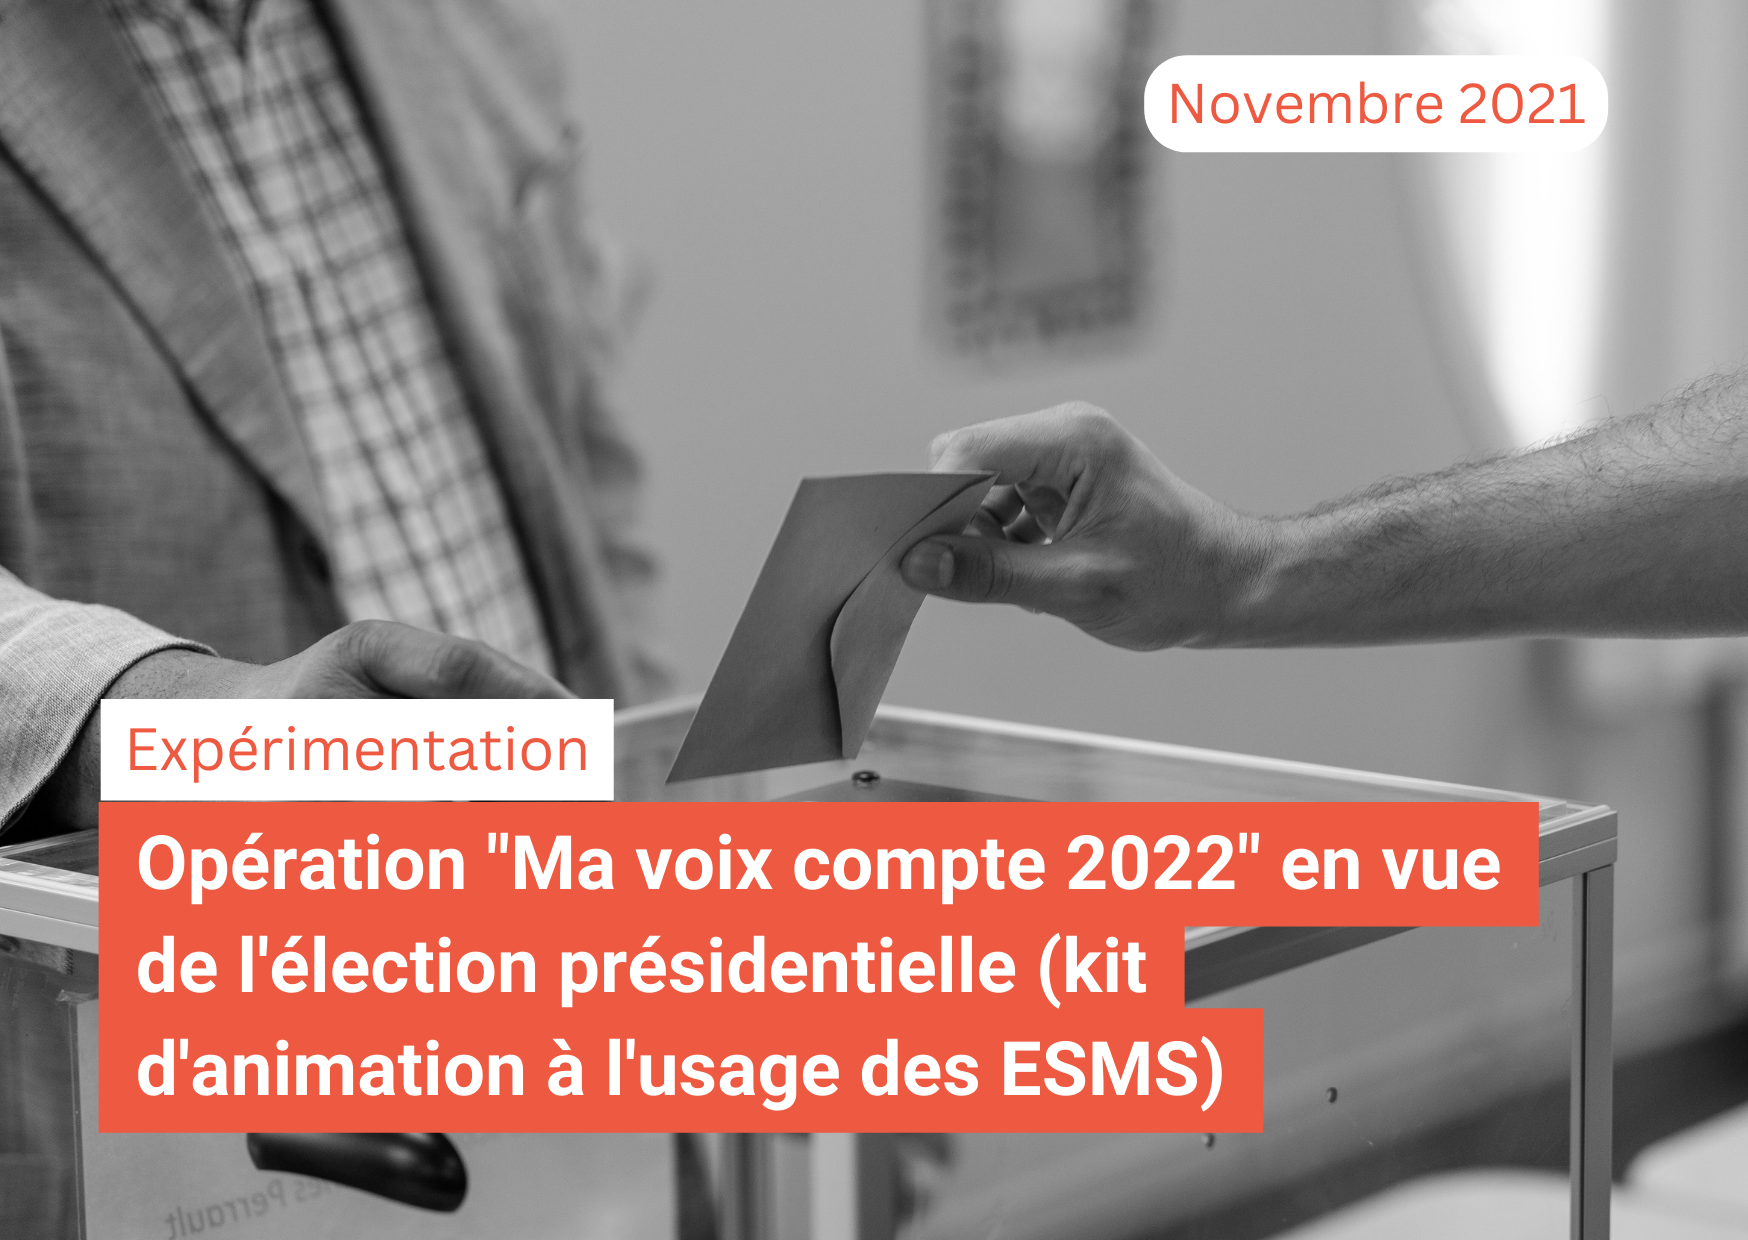 Opération "Ma voix compte 2022" en vue de l'élection présidentielle (kit d'animation à l'usage des ESMS)